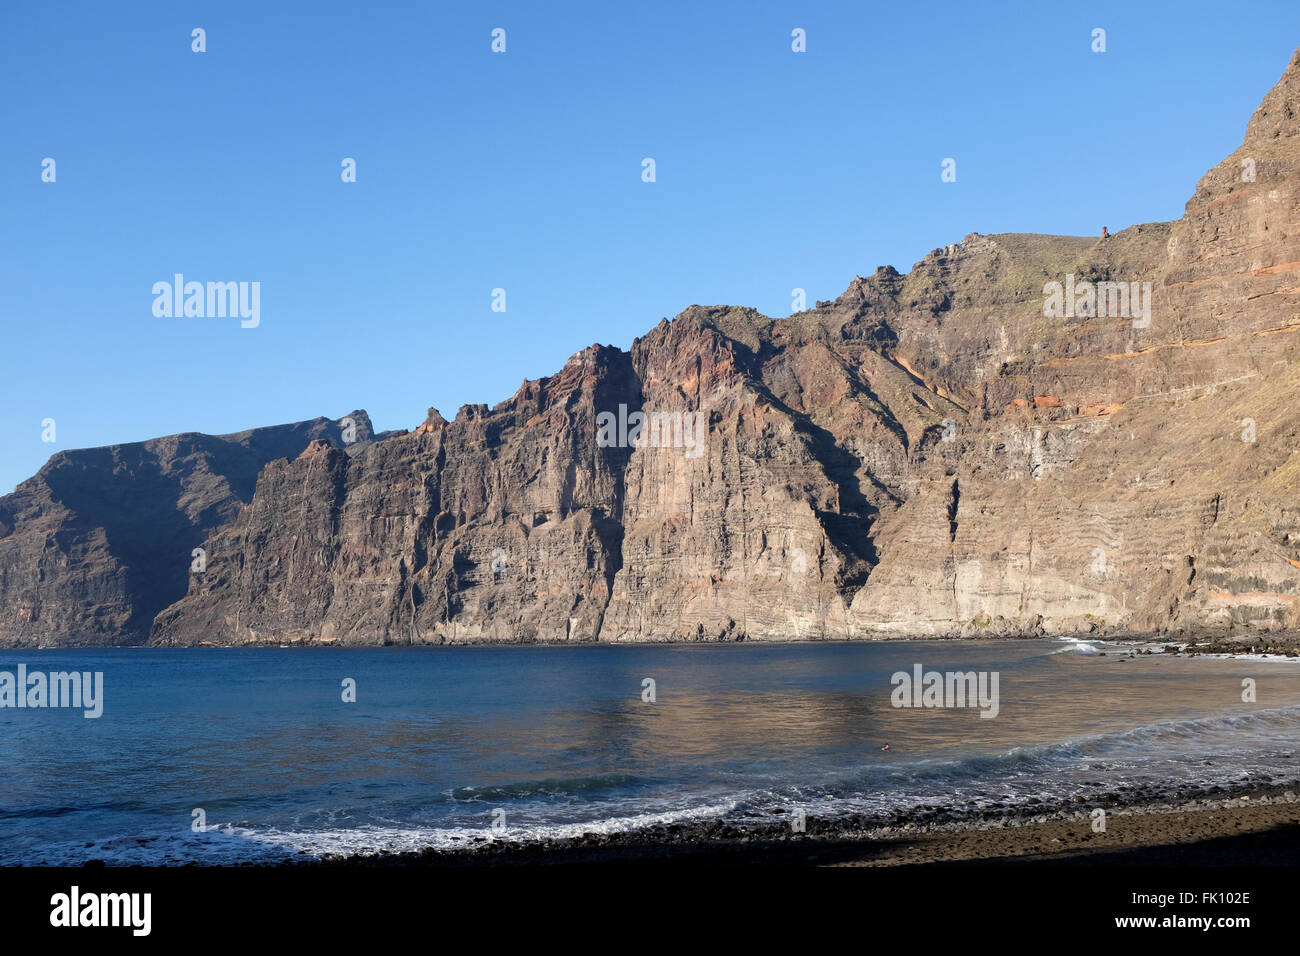 Acantilados de Los Gigantes, la costa occidentale dell'Isola Canarie Tenerife Spagna Foto Stock